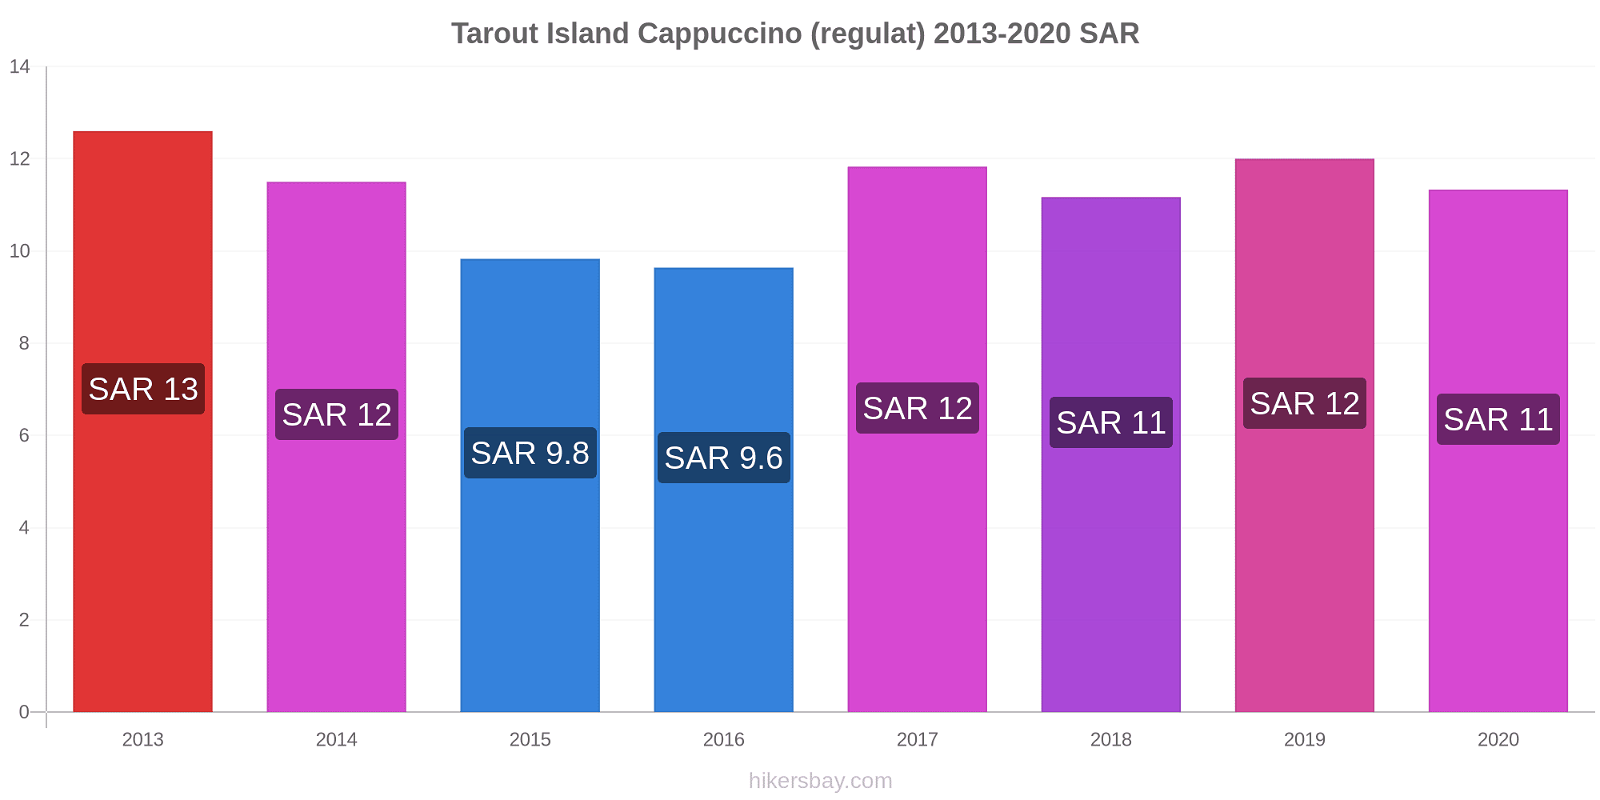 Tarout Island modificări de preț Cappuccino (regulat) hikersbay.com